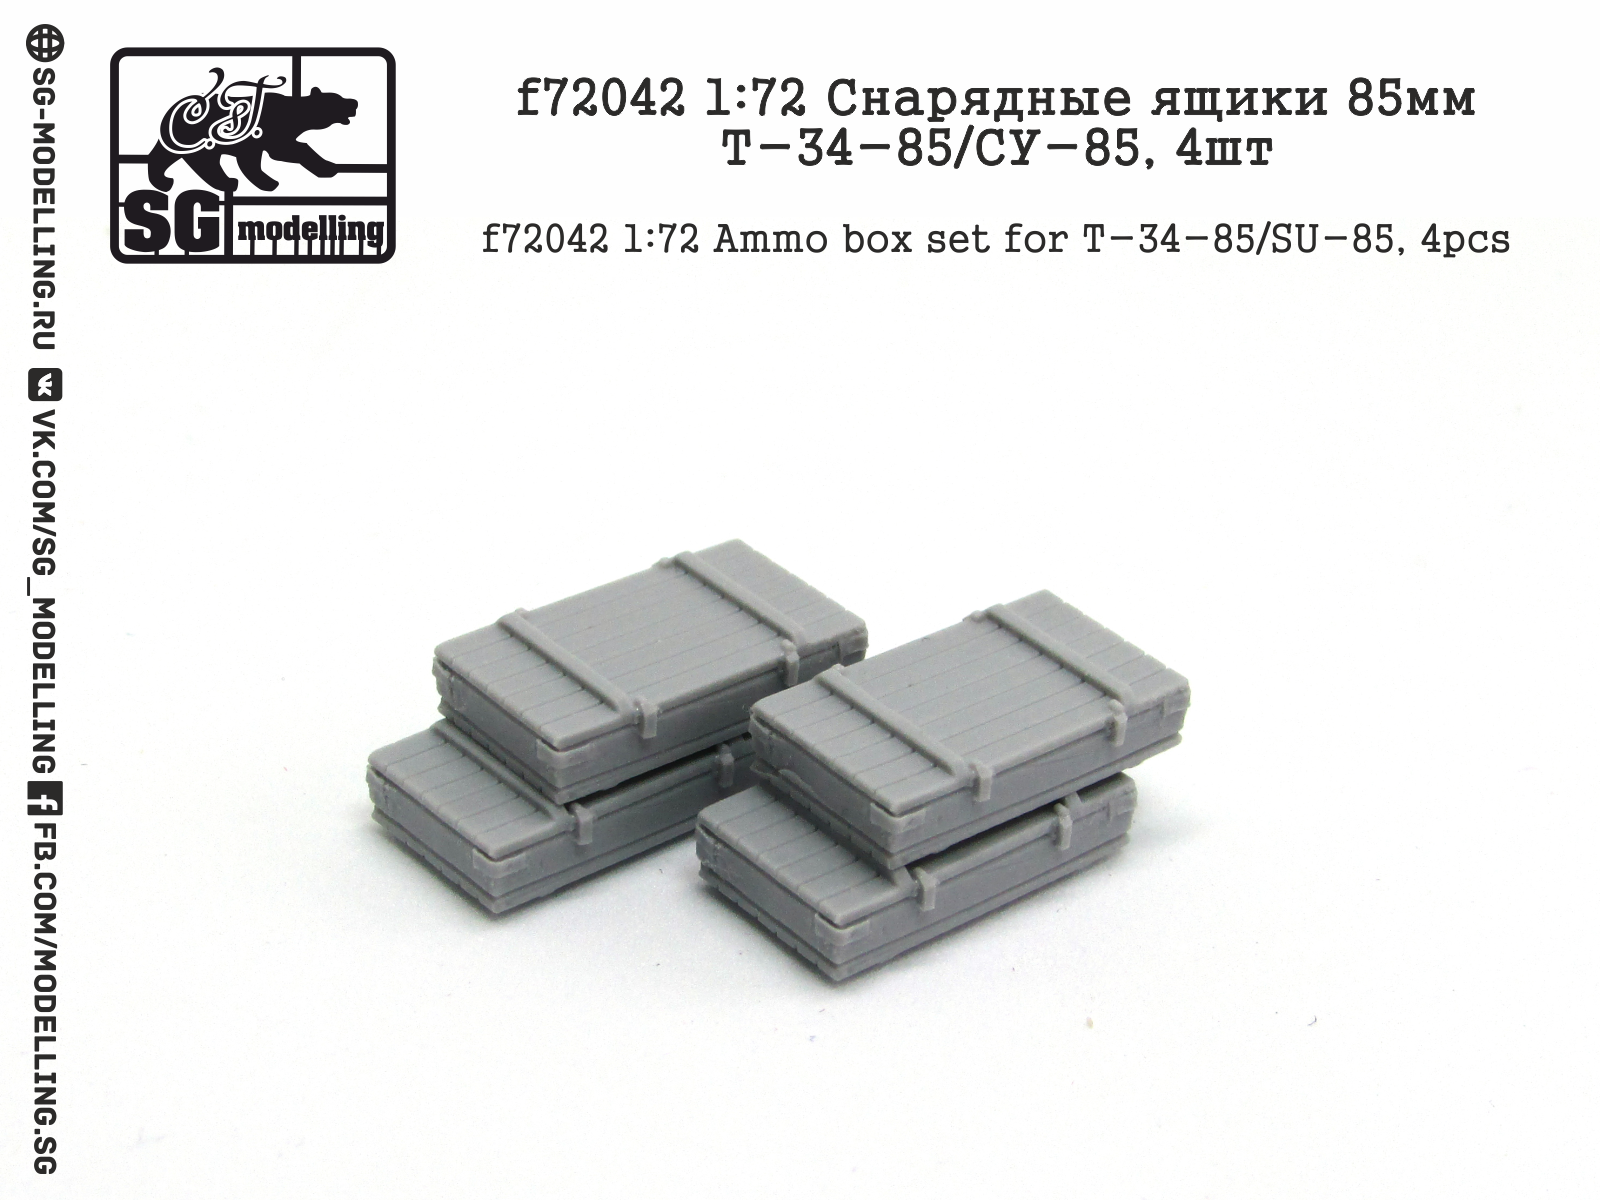 T-34-85/SU-85 ammo box (4pc)